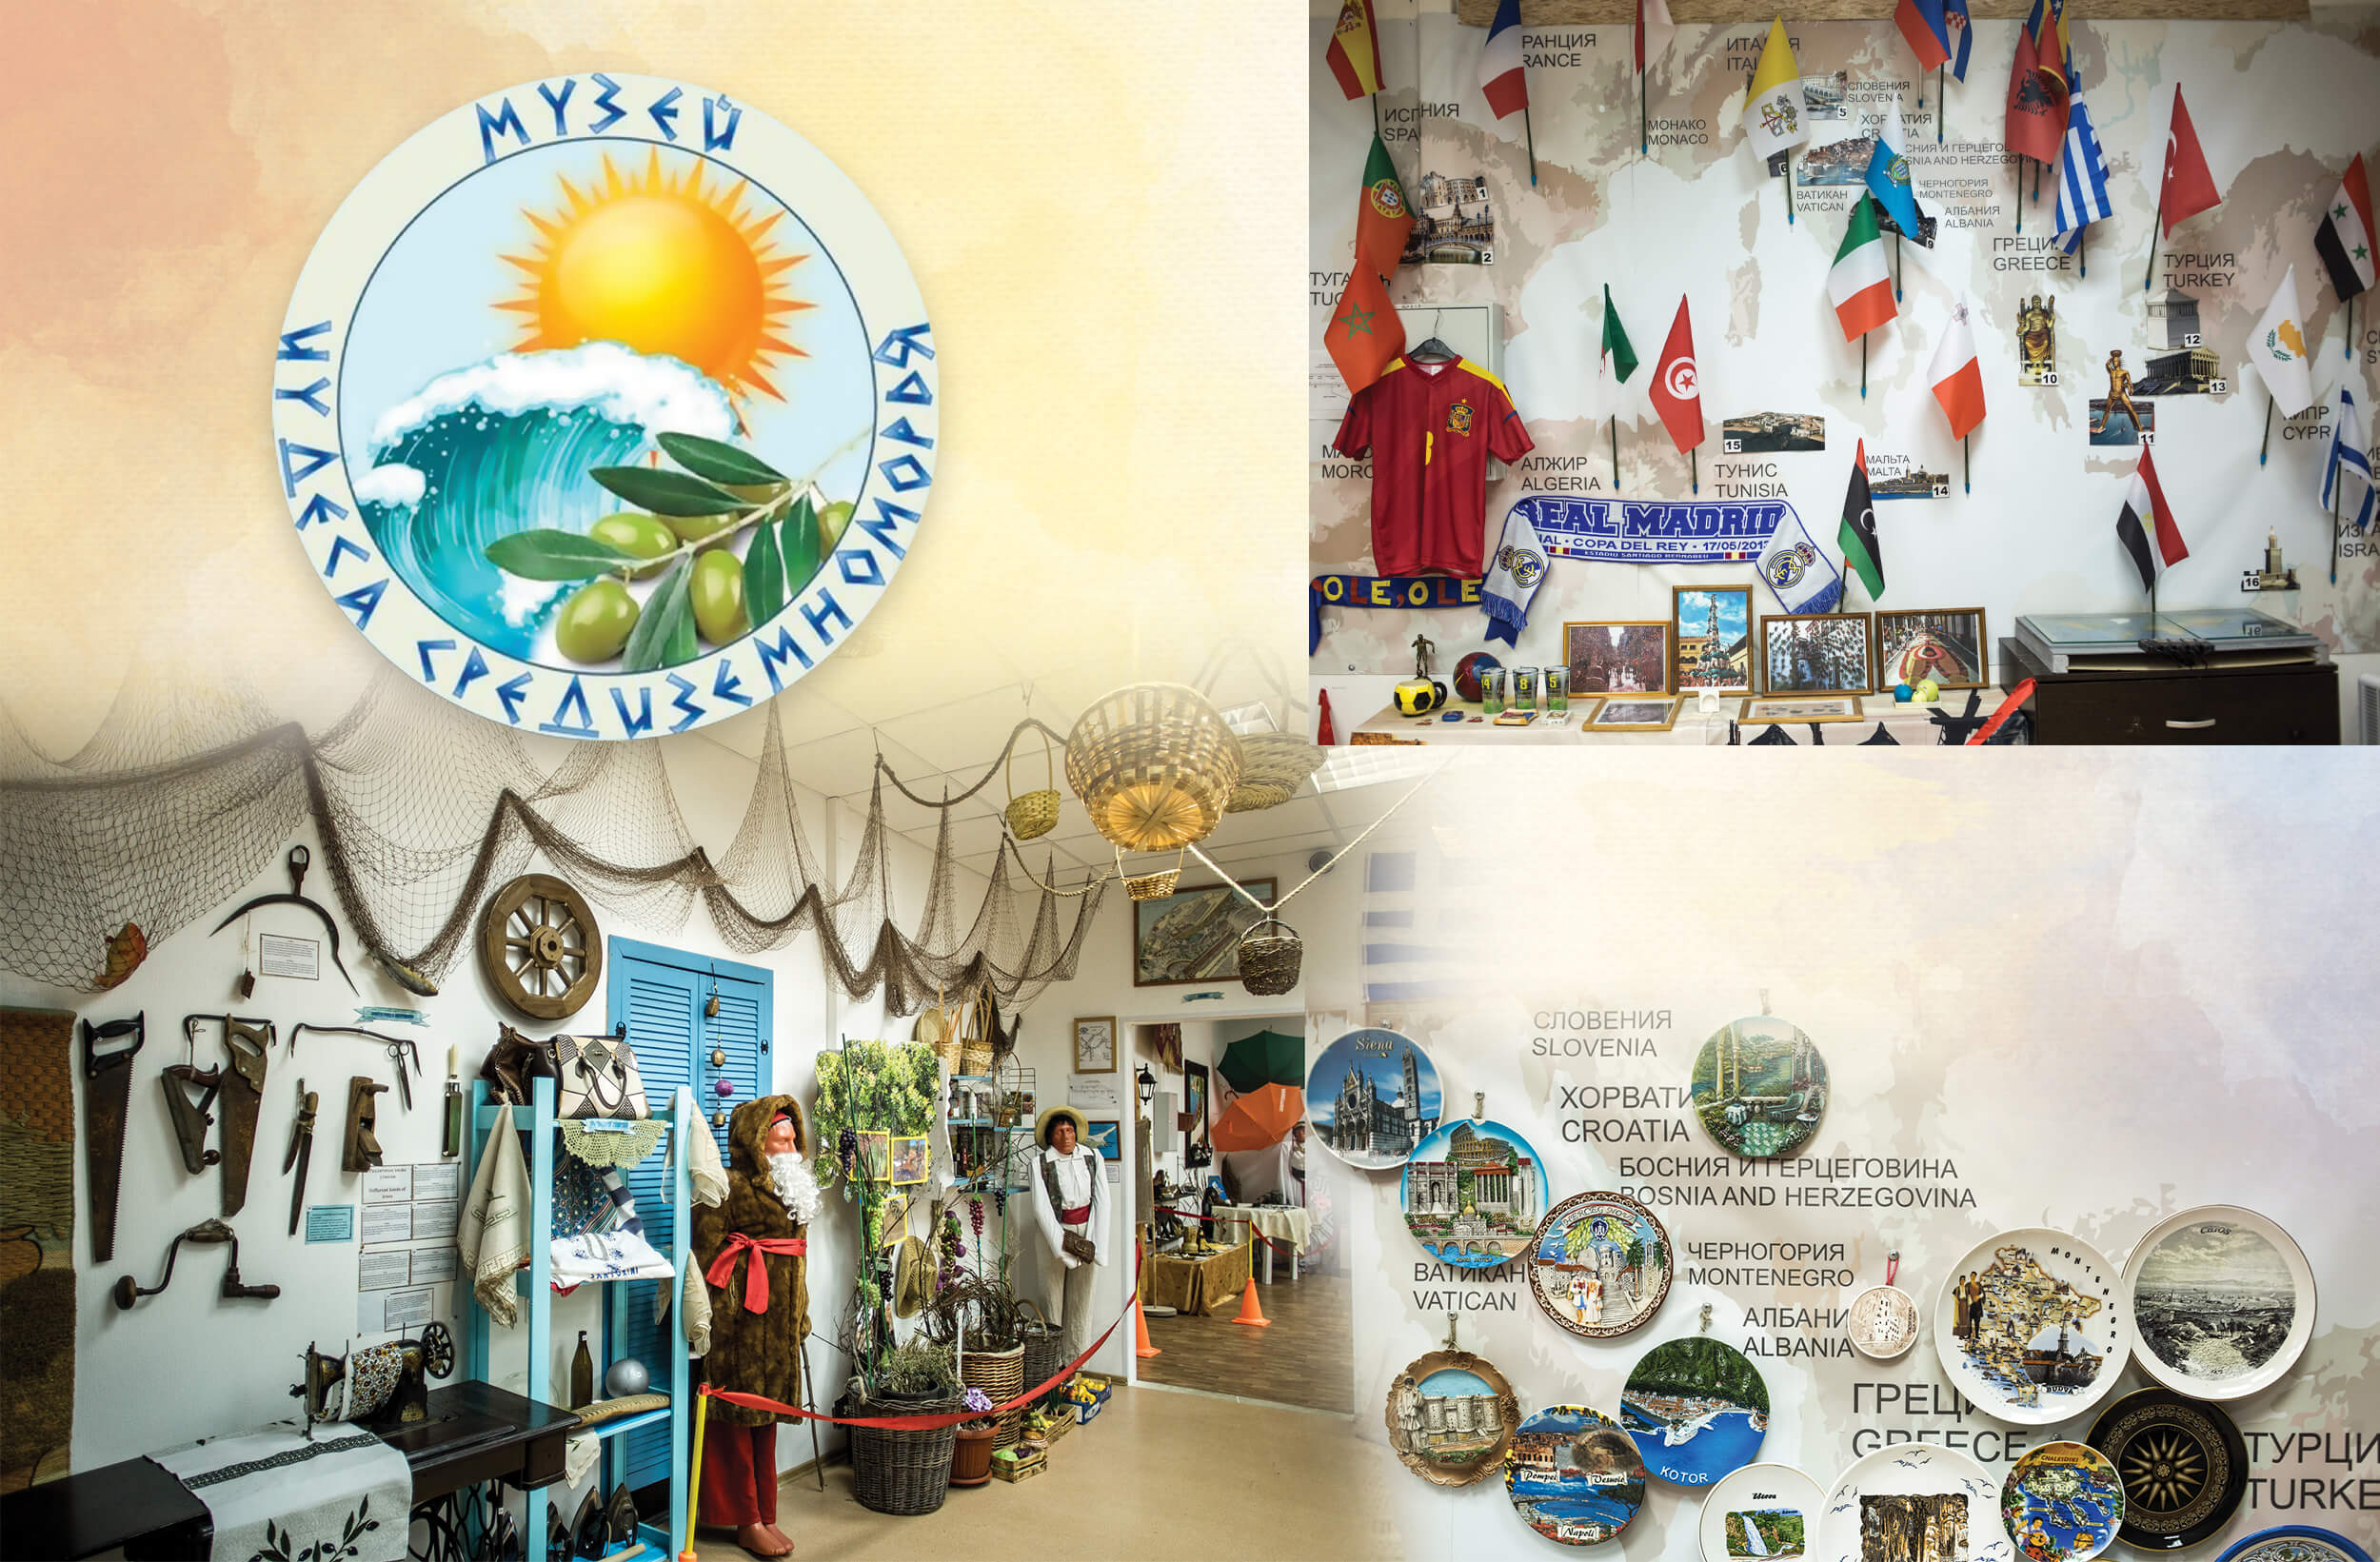 Музей «Чудеса Средиземноморья» — идеальное место для детей, фото